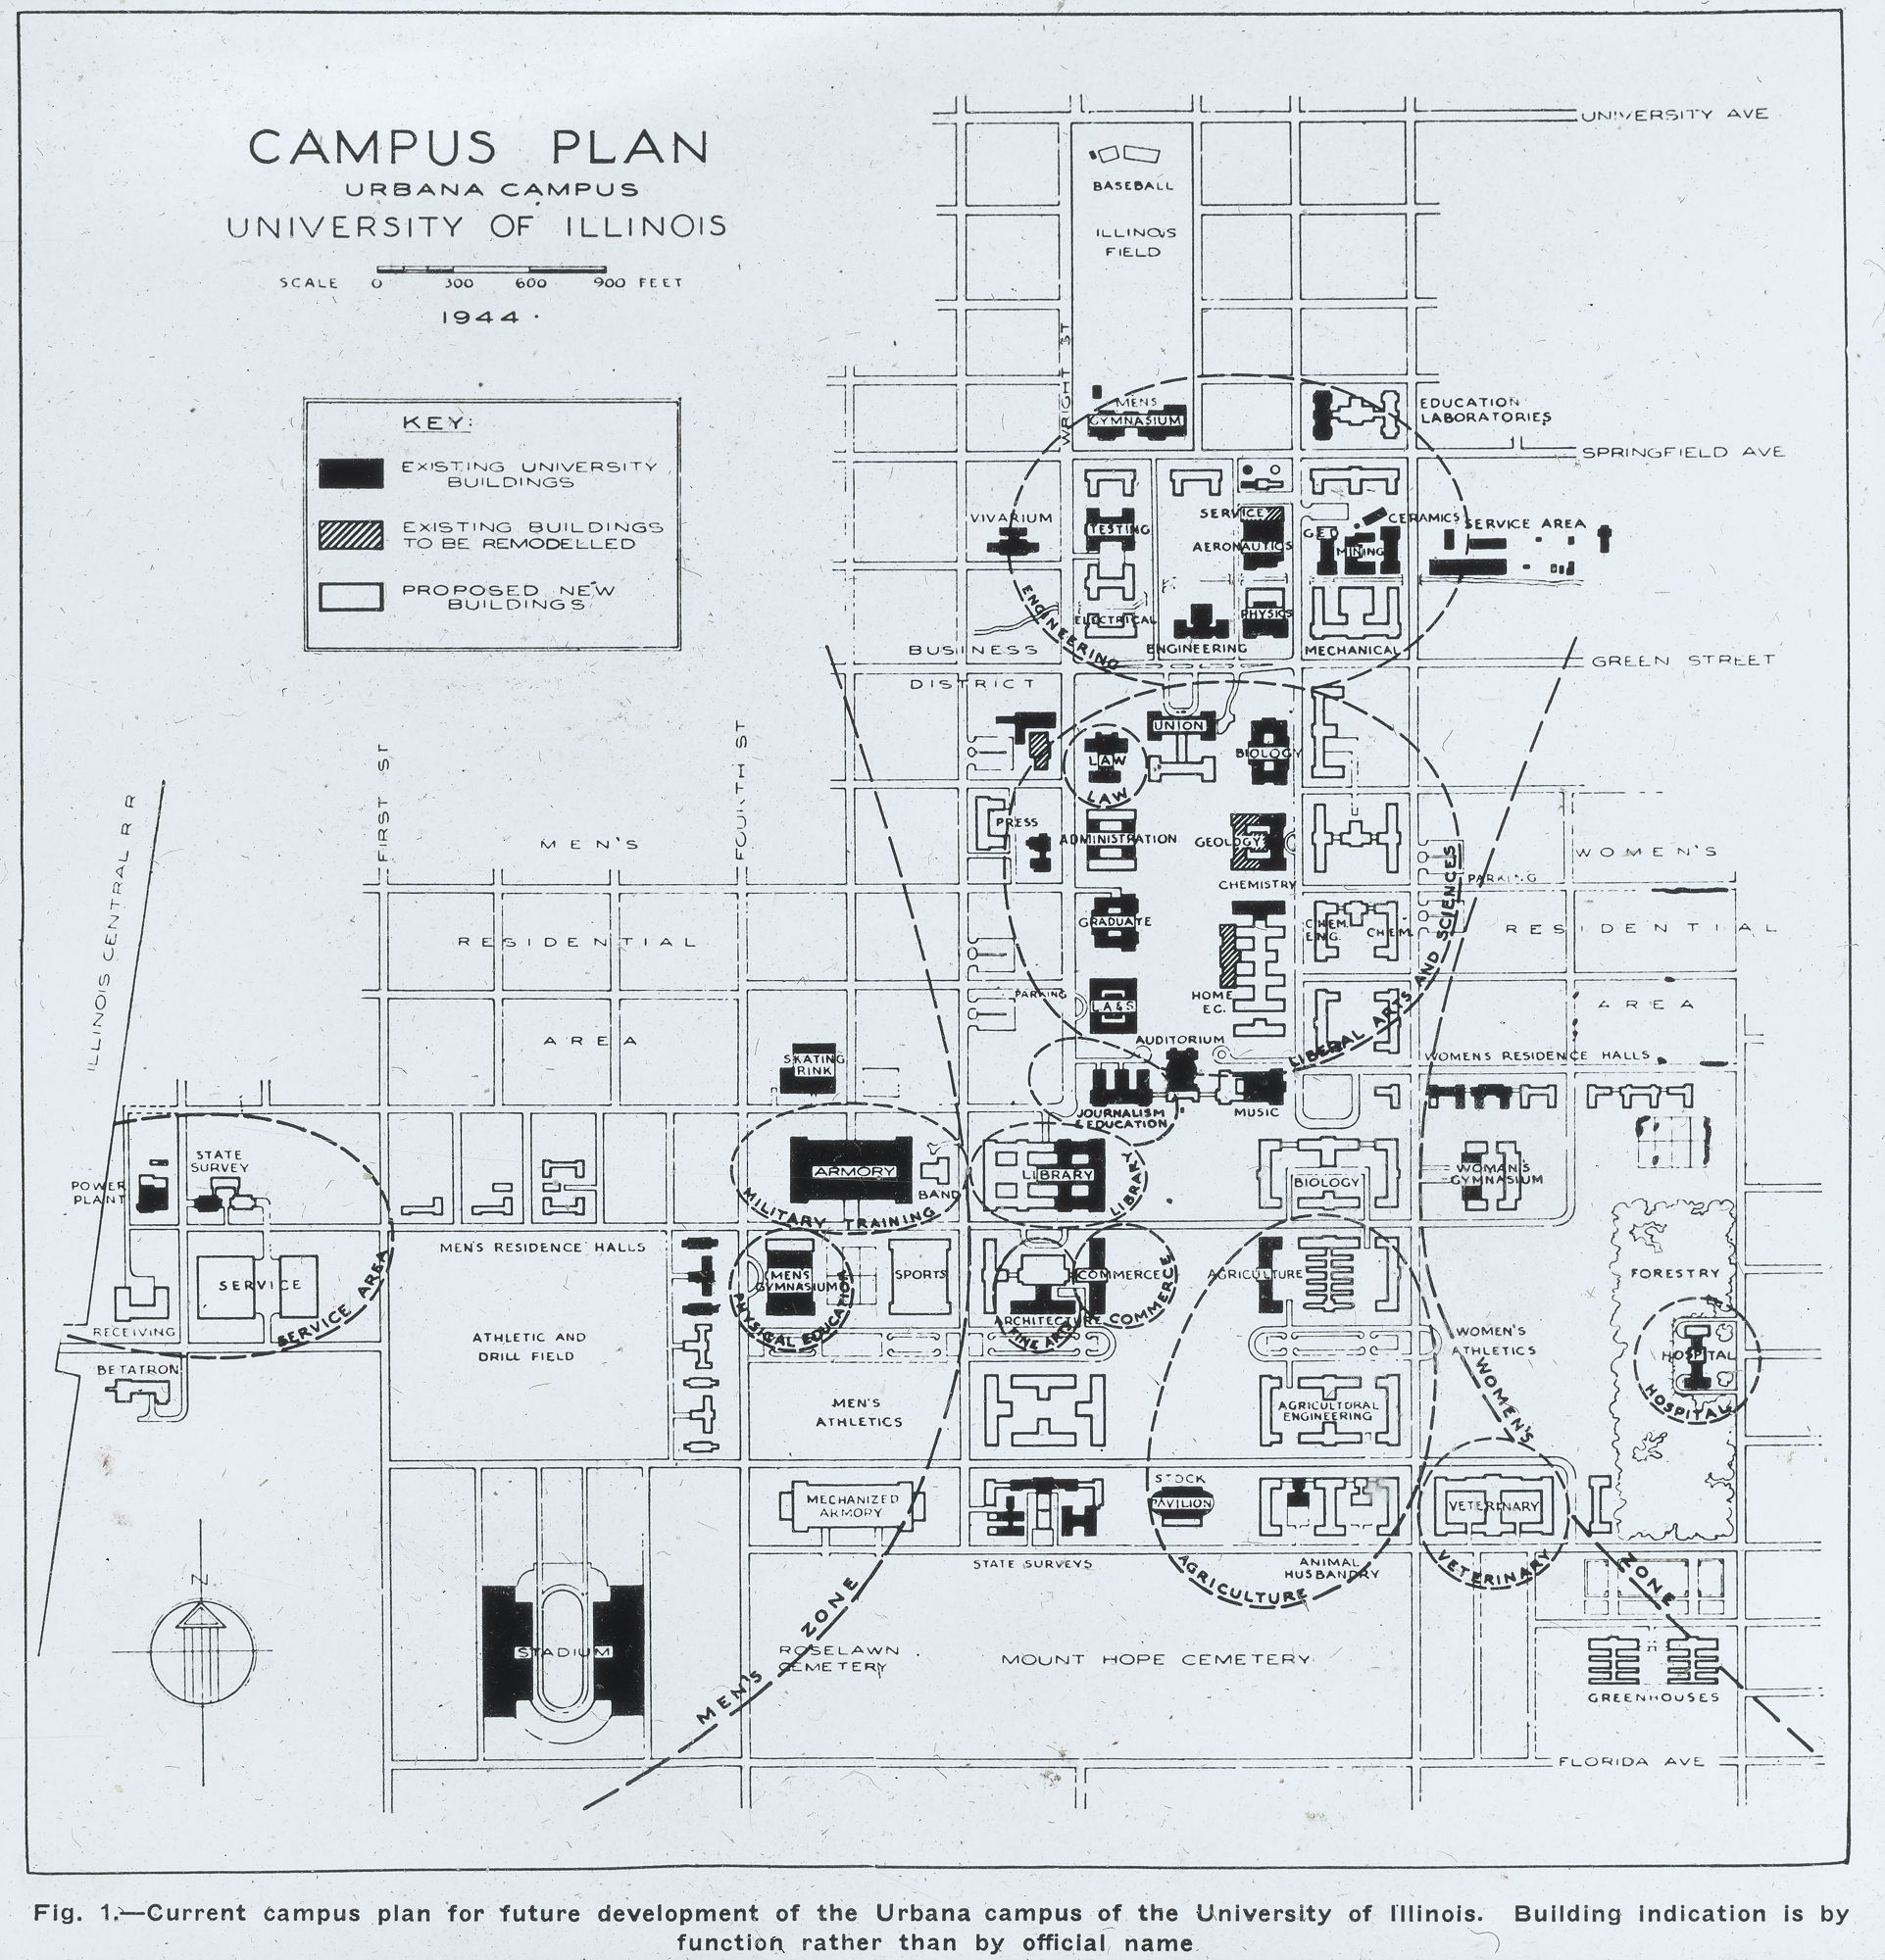 1952 Functional Campus Plan